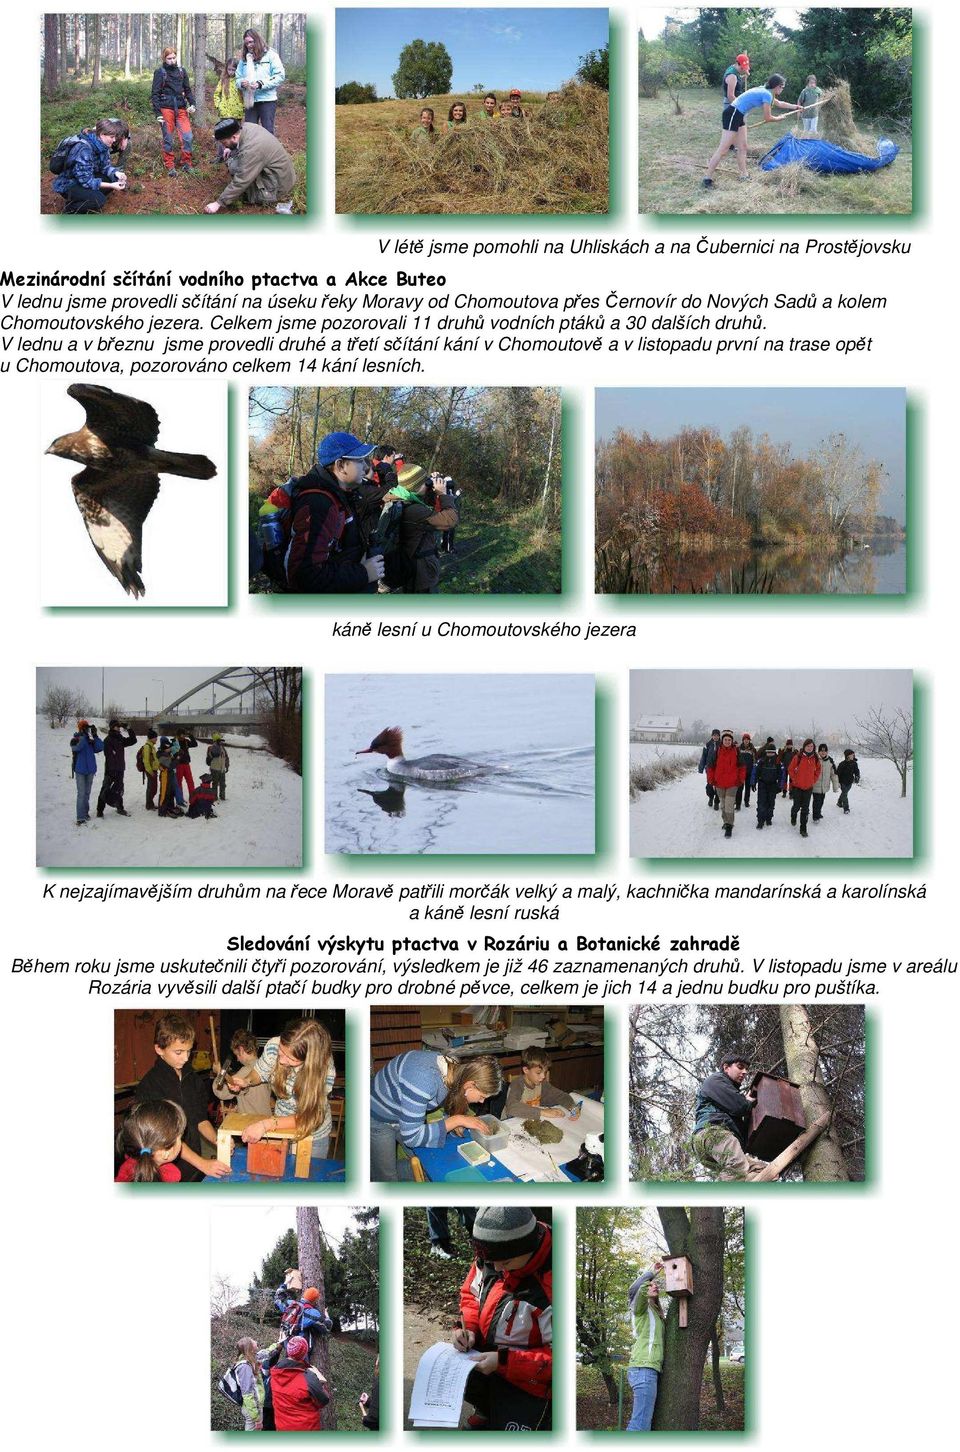 V lednu a v březnu jsme provedli druhé a třetí sčítání kání v Chomoutově a v listopadu první na trase opět u Chomoutova, pozorováno celkem 14 kání lesních.